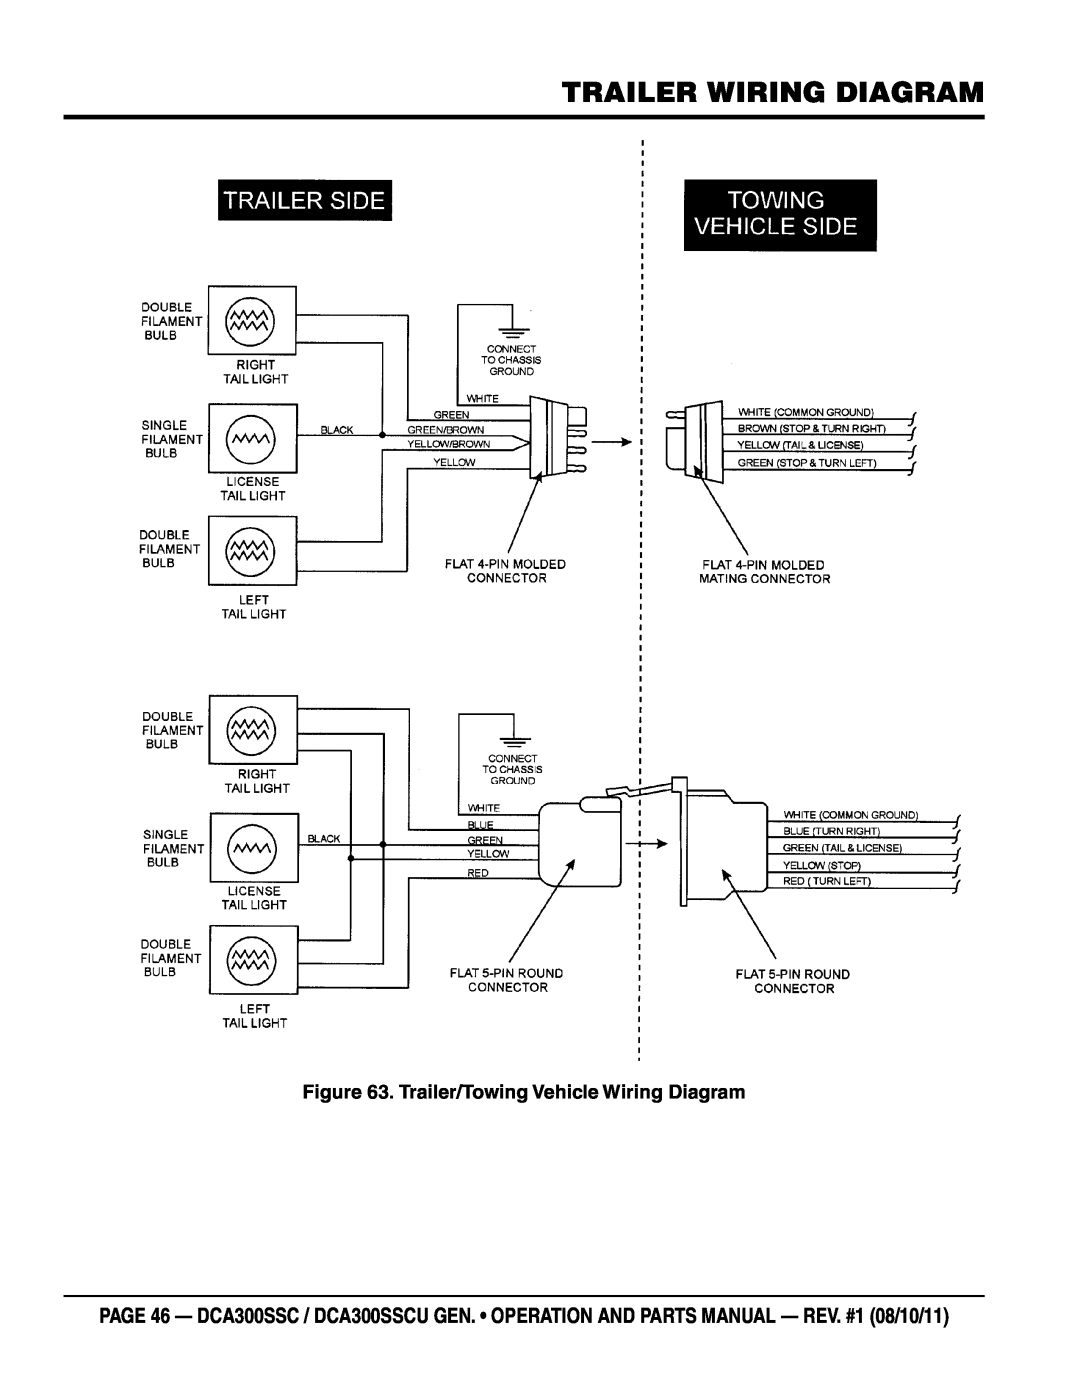 Multiquip DCA300SSCU manual Trailer Wiring Diagram, Trailer/Towing Vehicle Wiring Diagram 